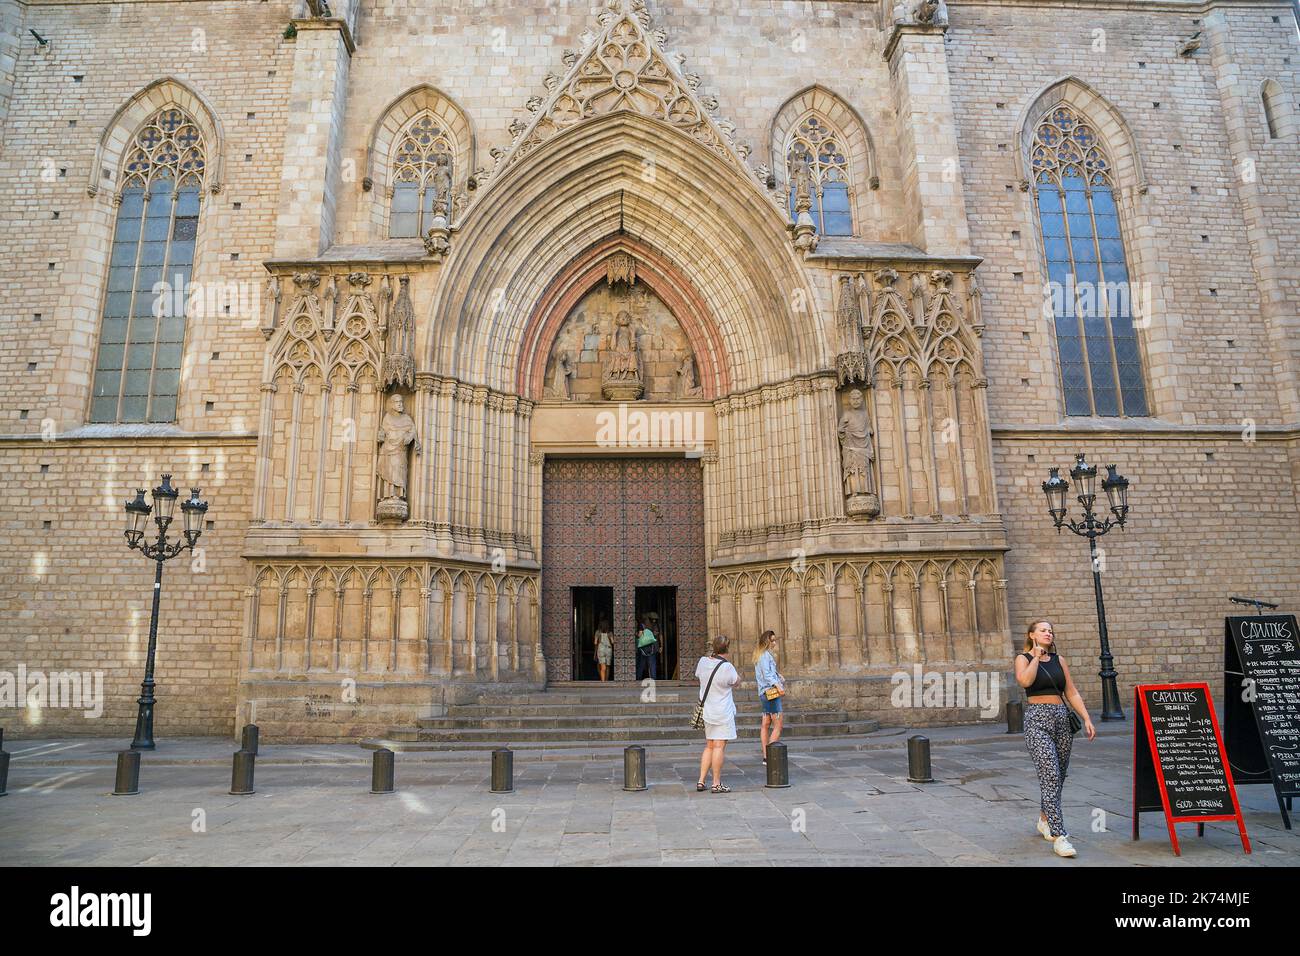 BARCELONE, ESPAGNE - 17 MAI 2017 : c'est le portail ouest gothique de la basilique Santa Maria del Mar. Banque D'Images